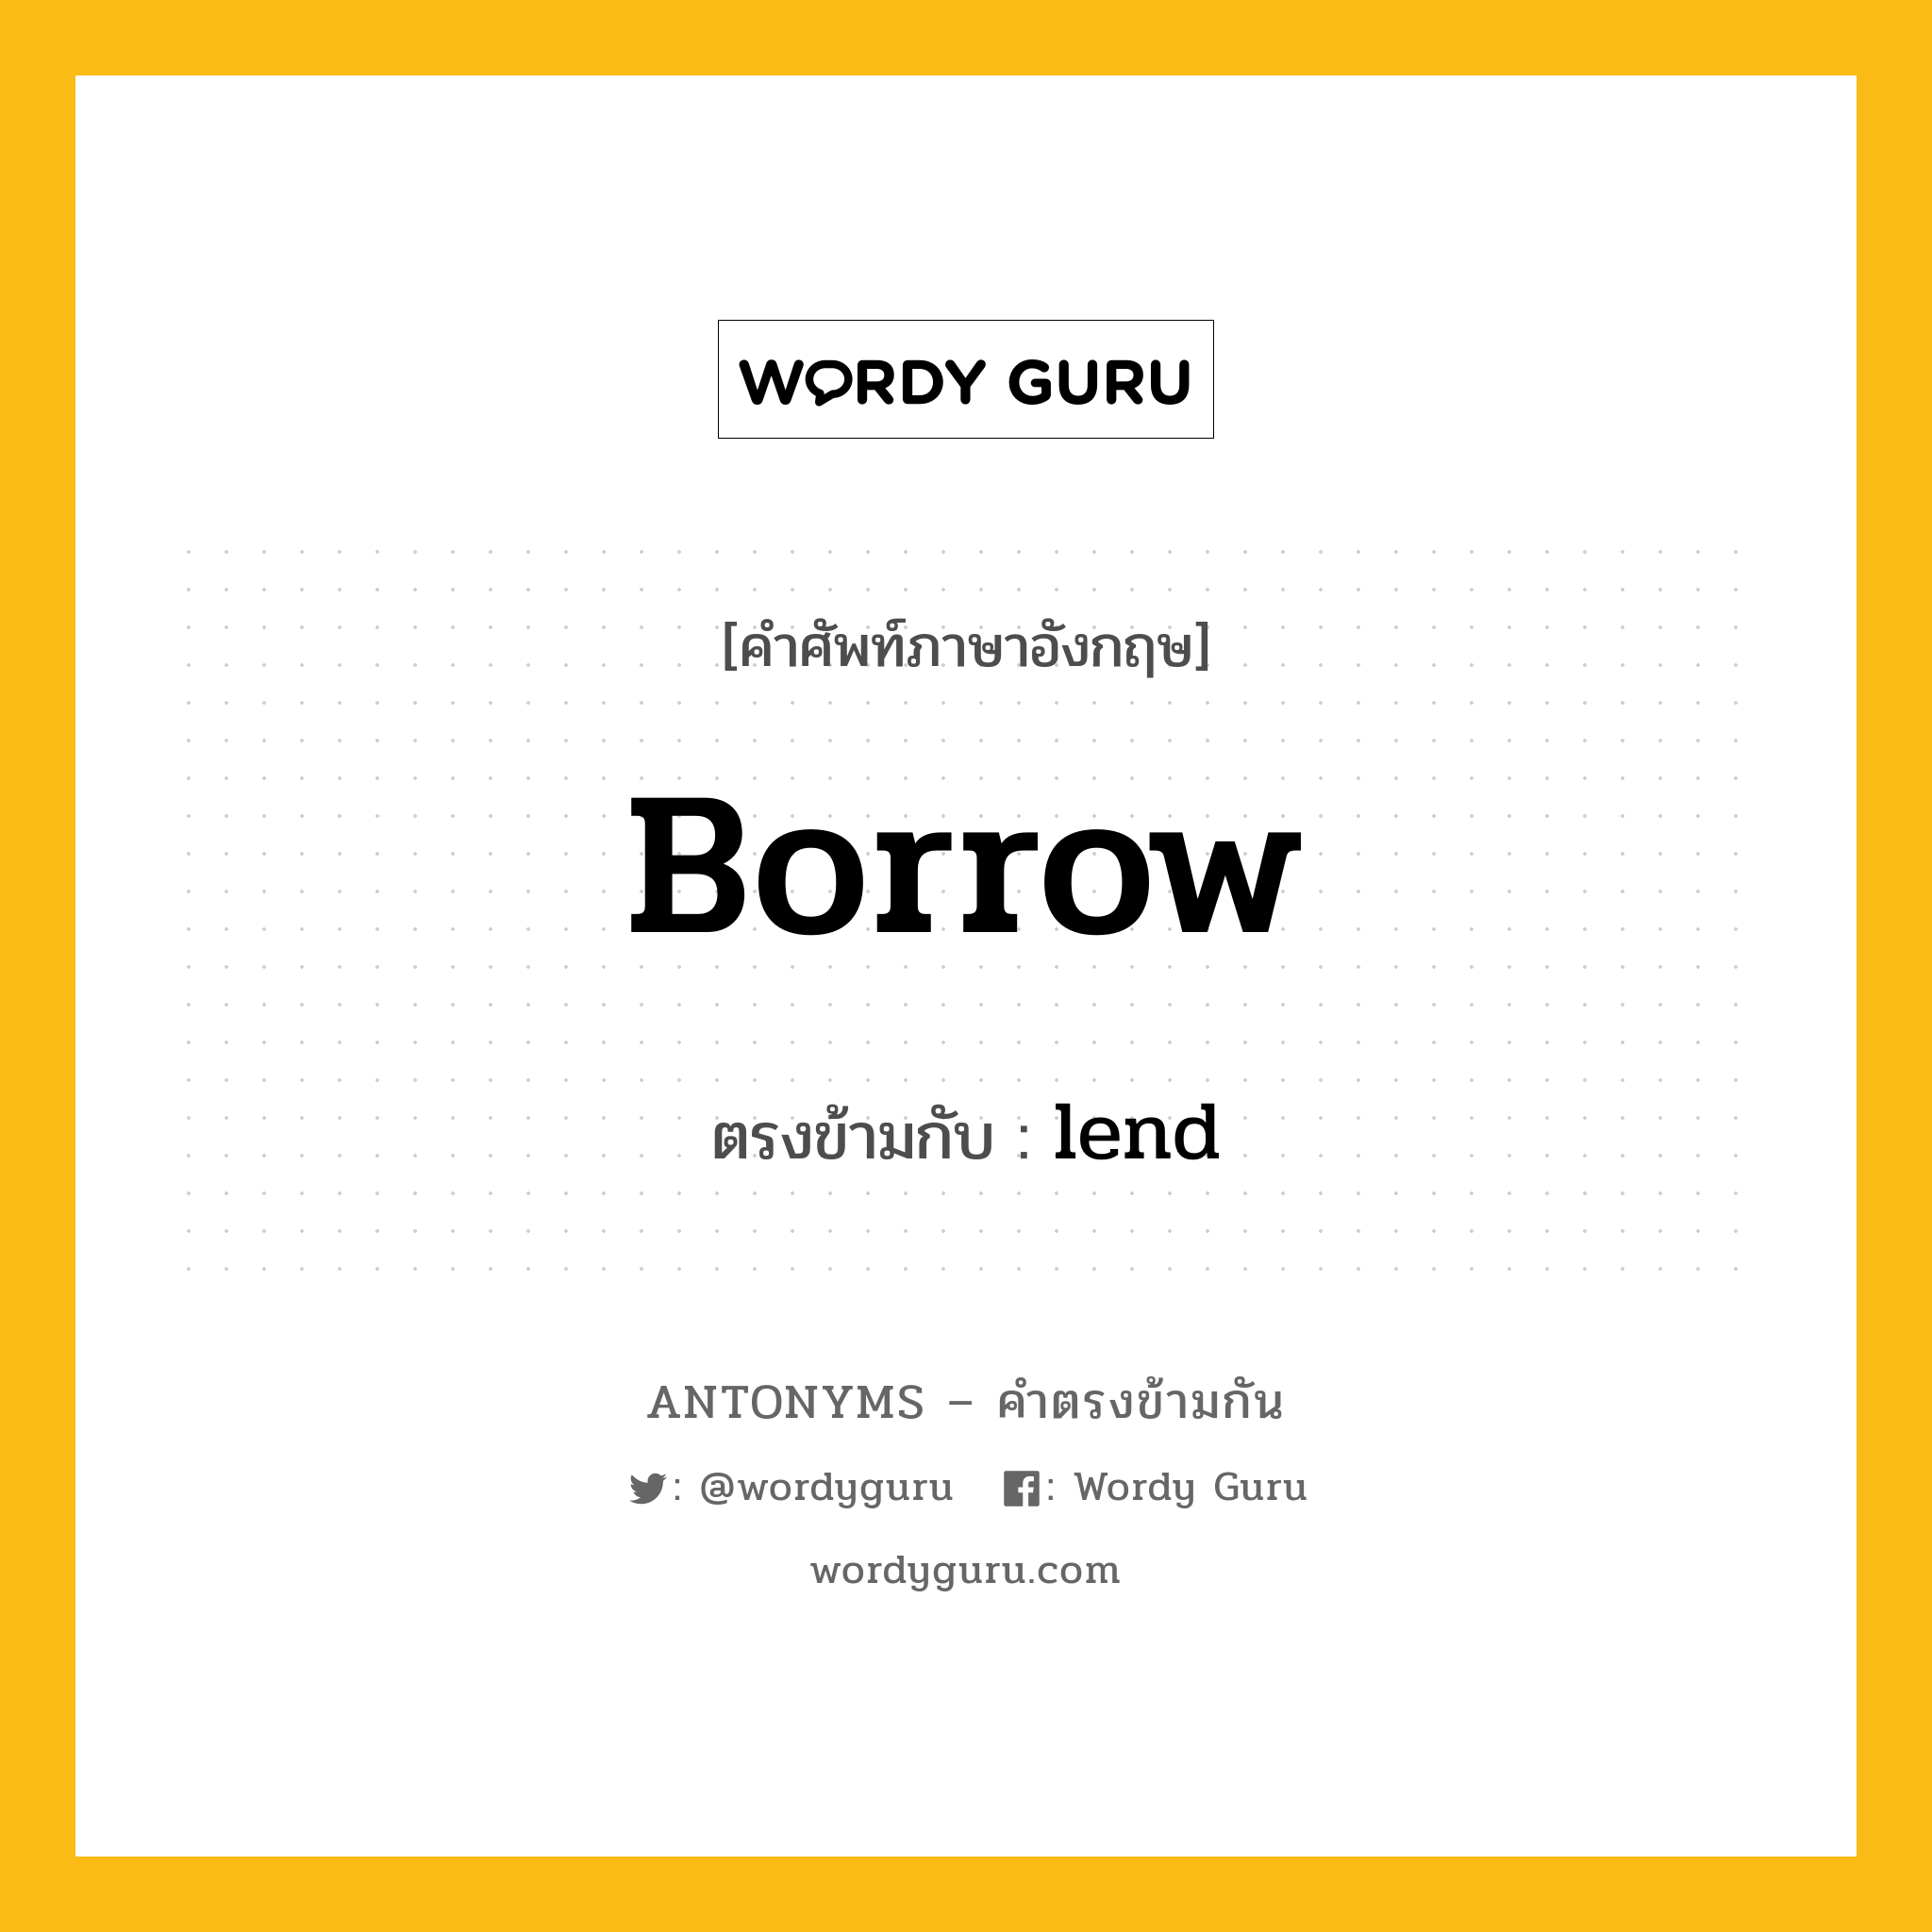 borrow เป็นคำตรงข้ามกับคำไหนบ้าง?, คำศัพท์ภาษาอังกฤษที่มีความหมายตรงข้ามกัน borrow ตรงข้ามกับ lend หมวด lend